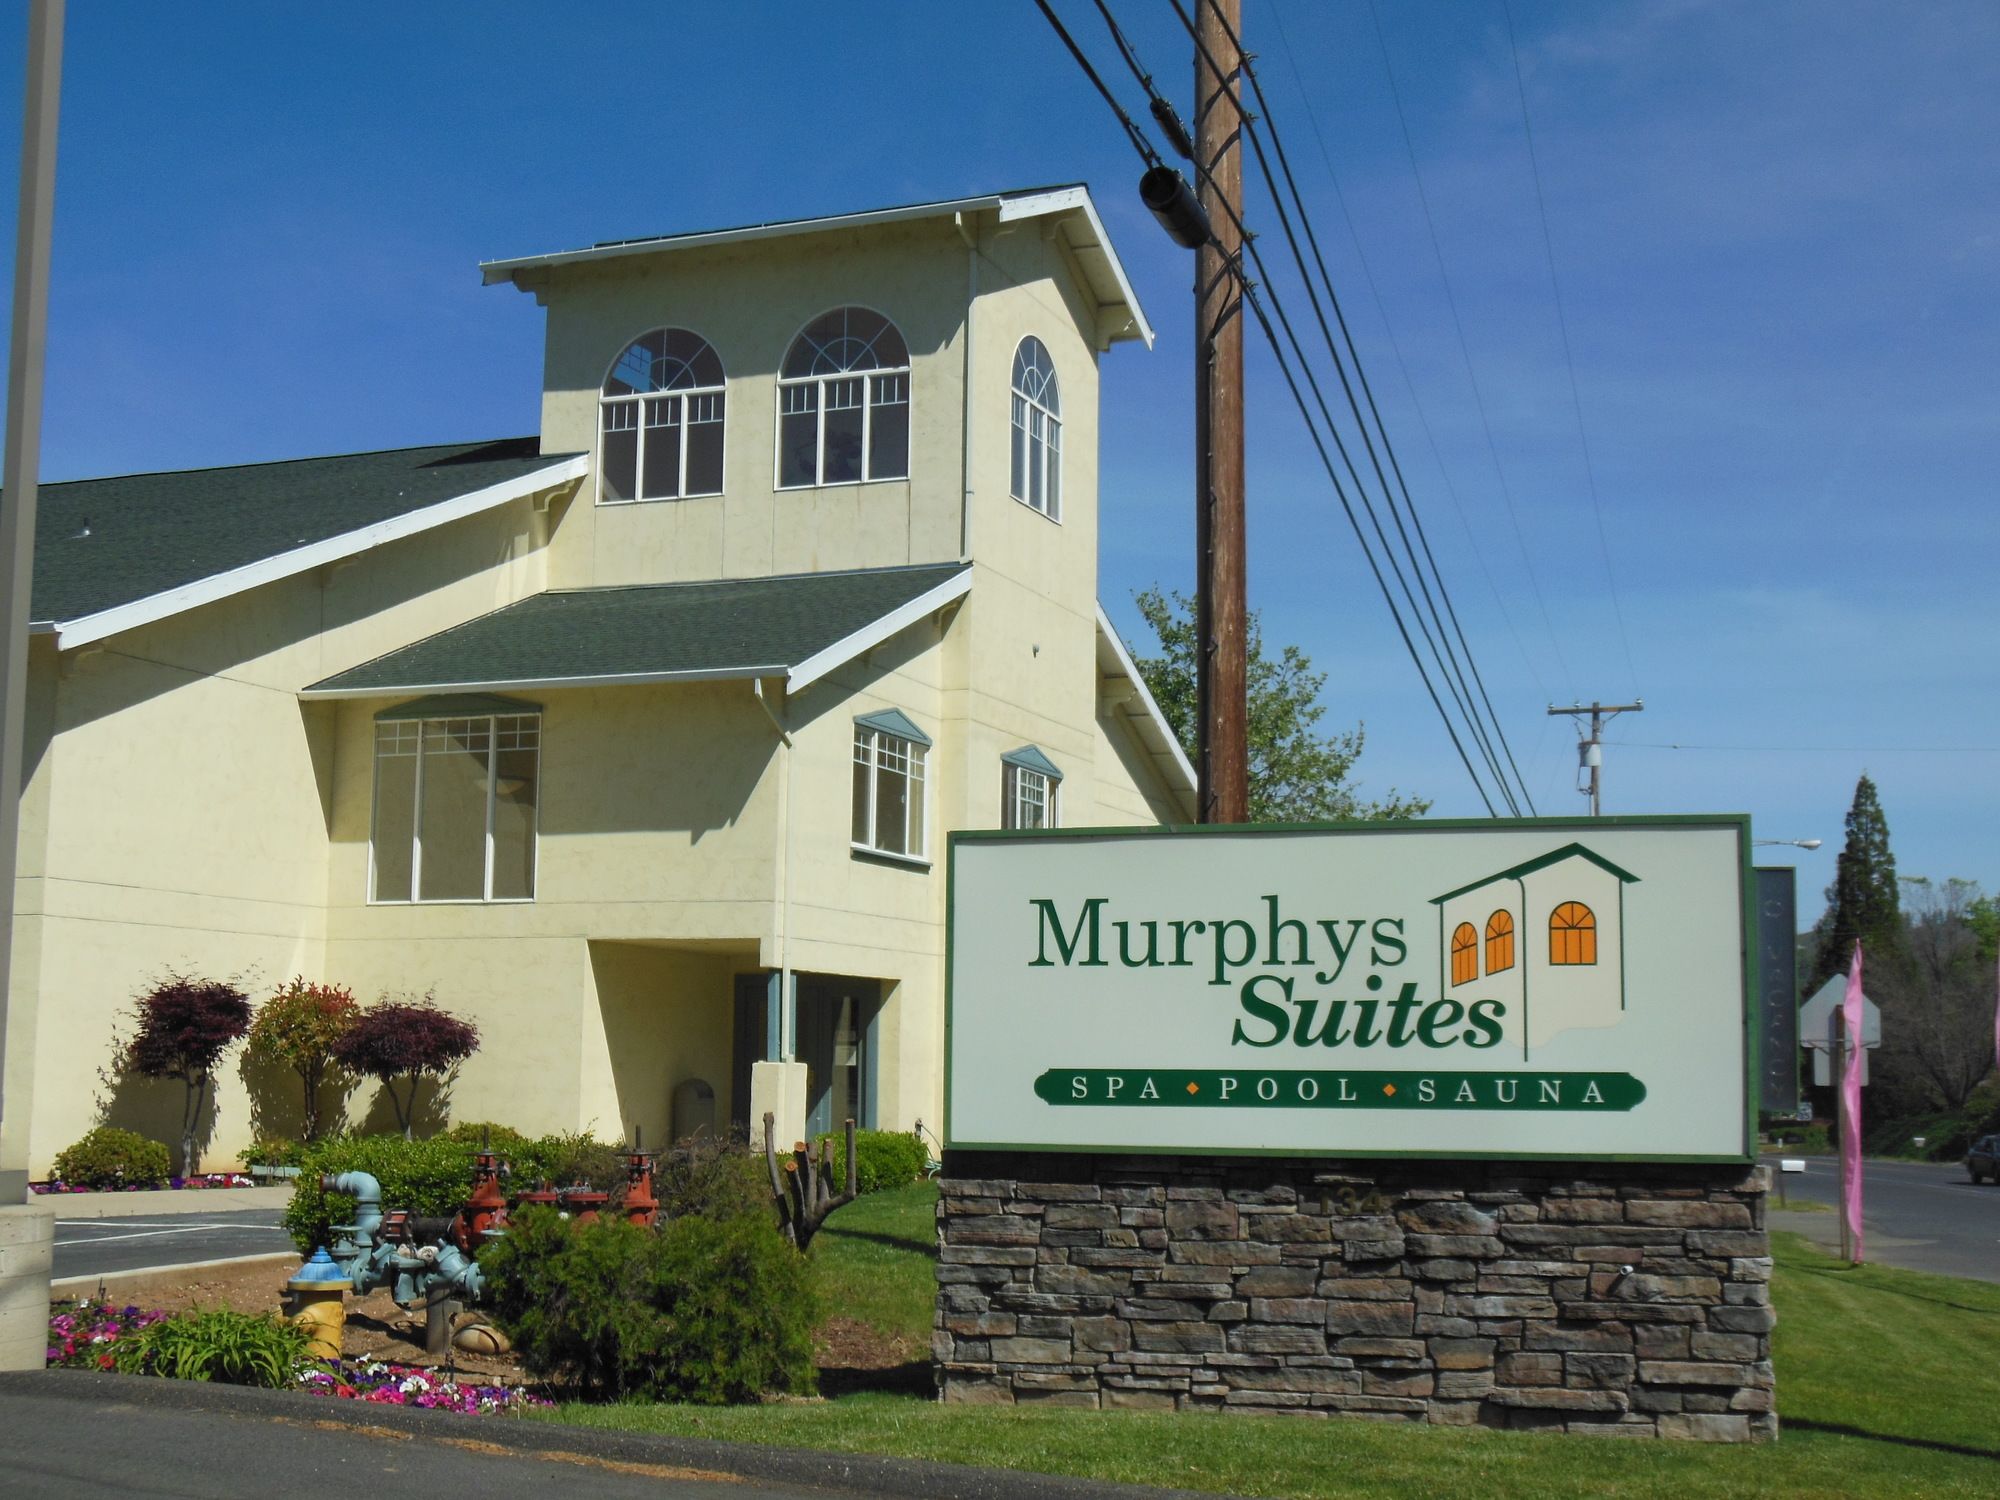 Murphys Suites